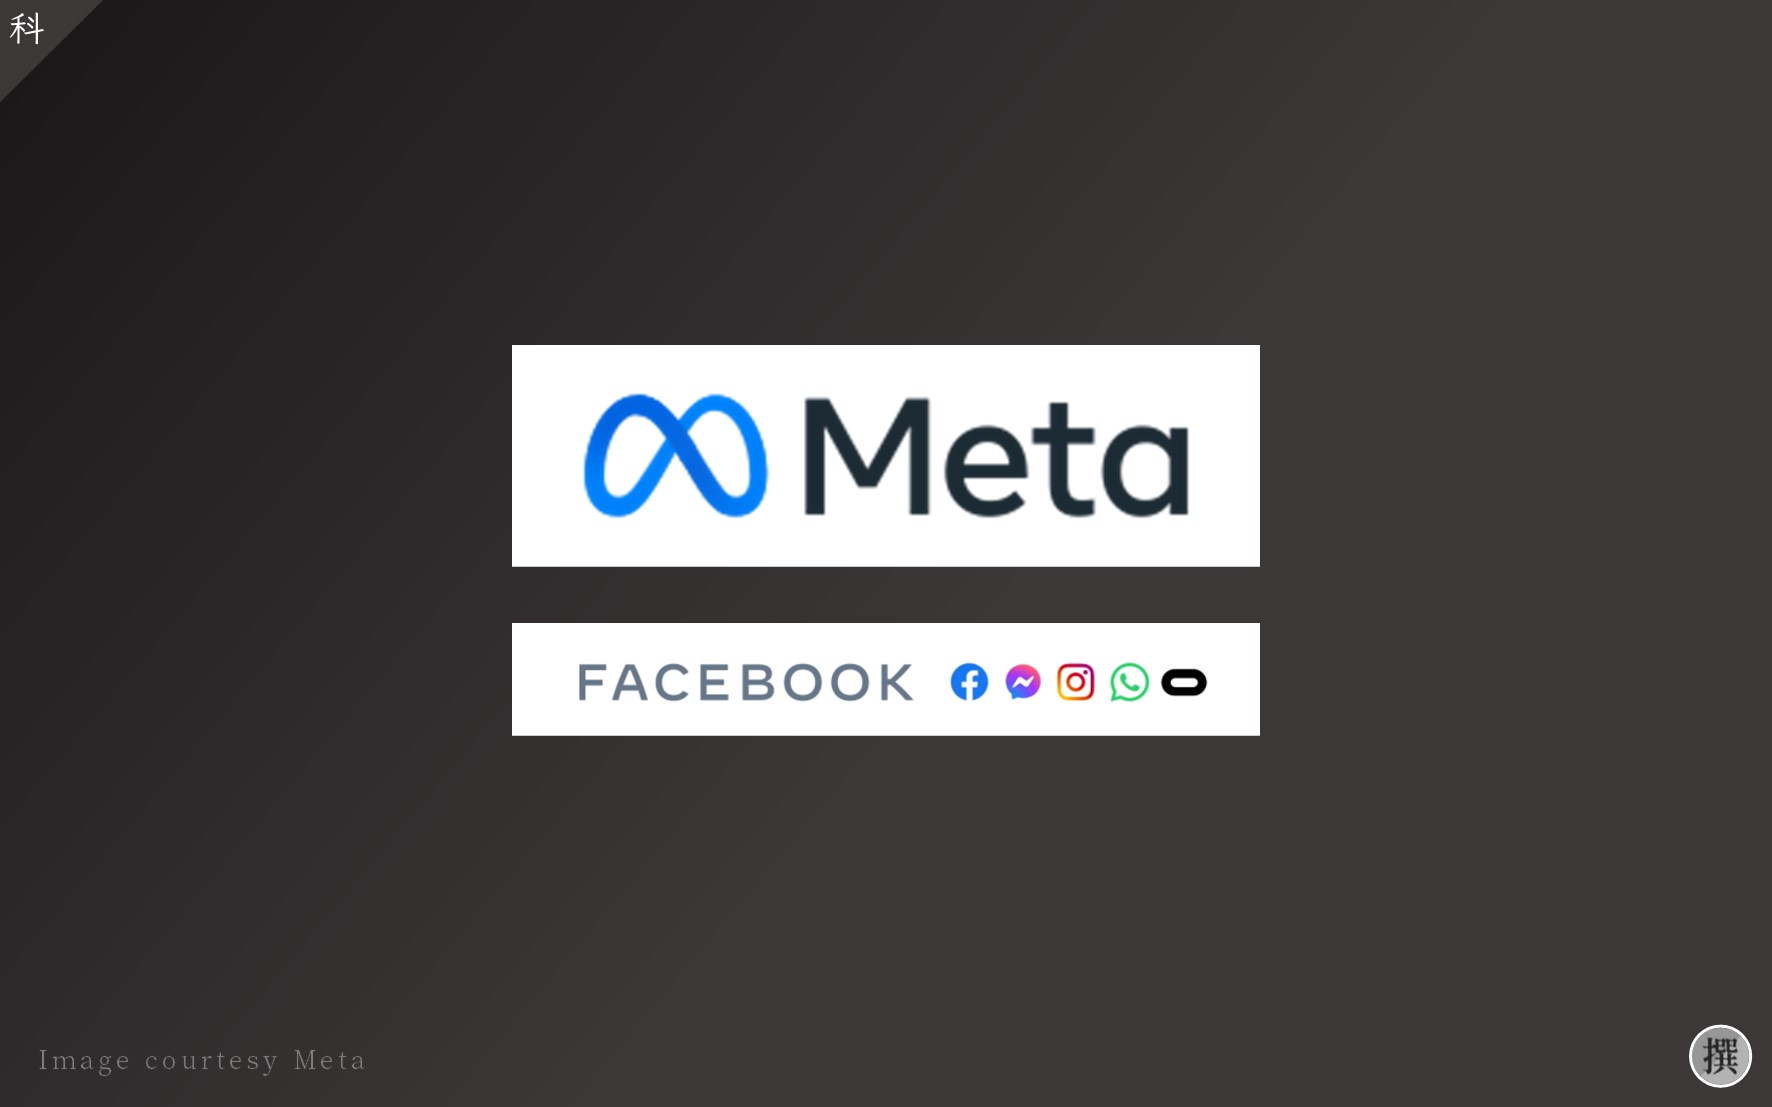 發布會／Facebook Connect 2021重點解析－Facebook轉型Meta？Meta元宇宙可能面臨的困境與未來